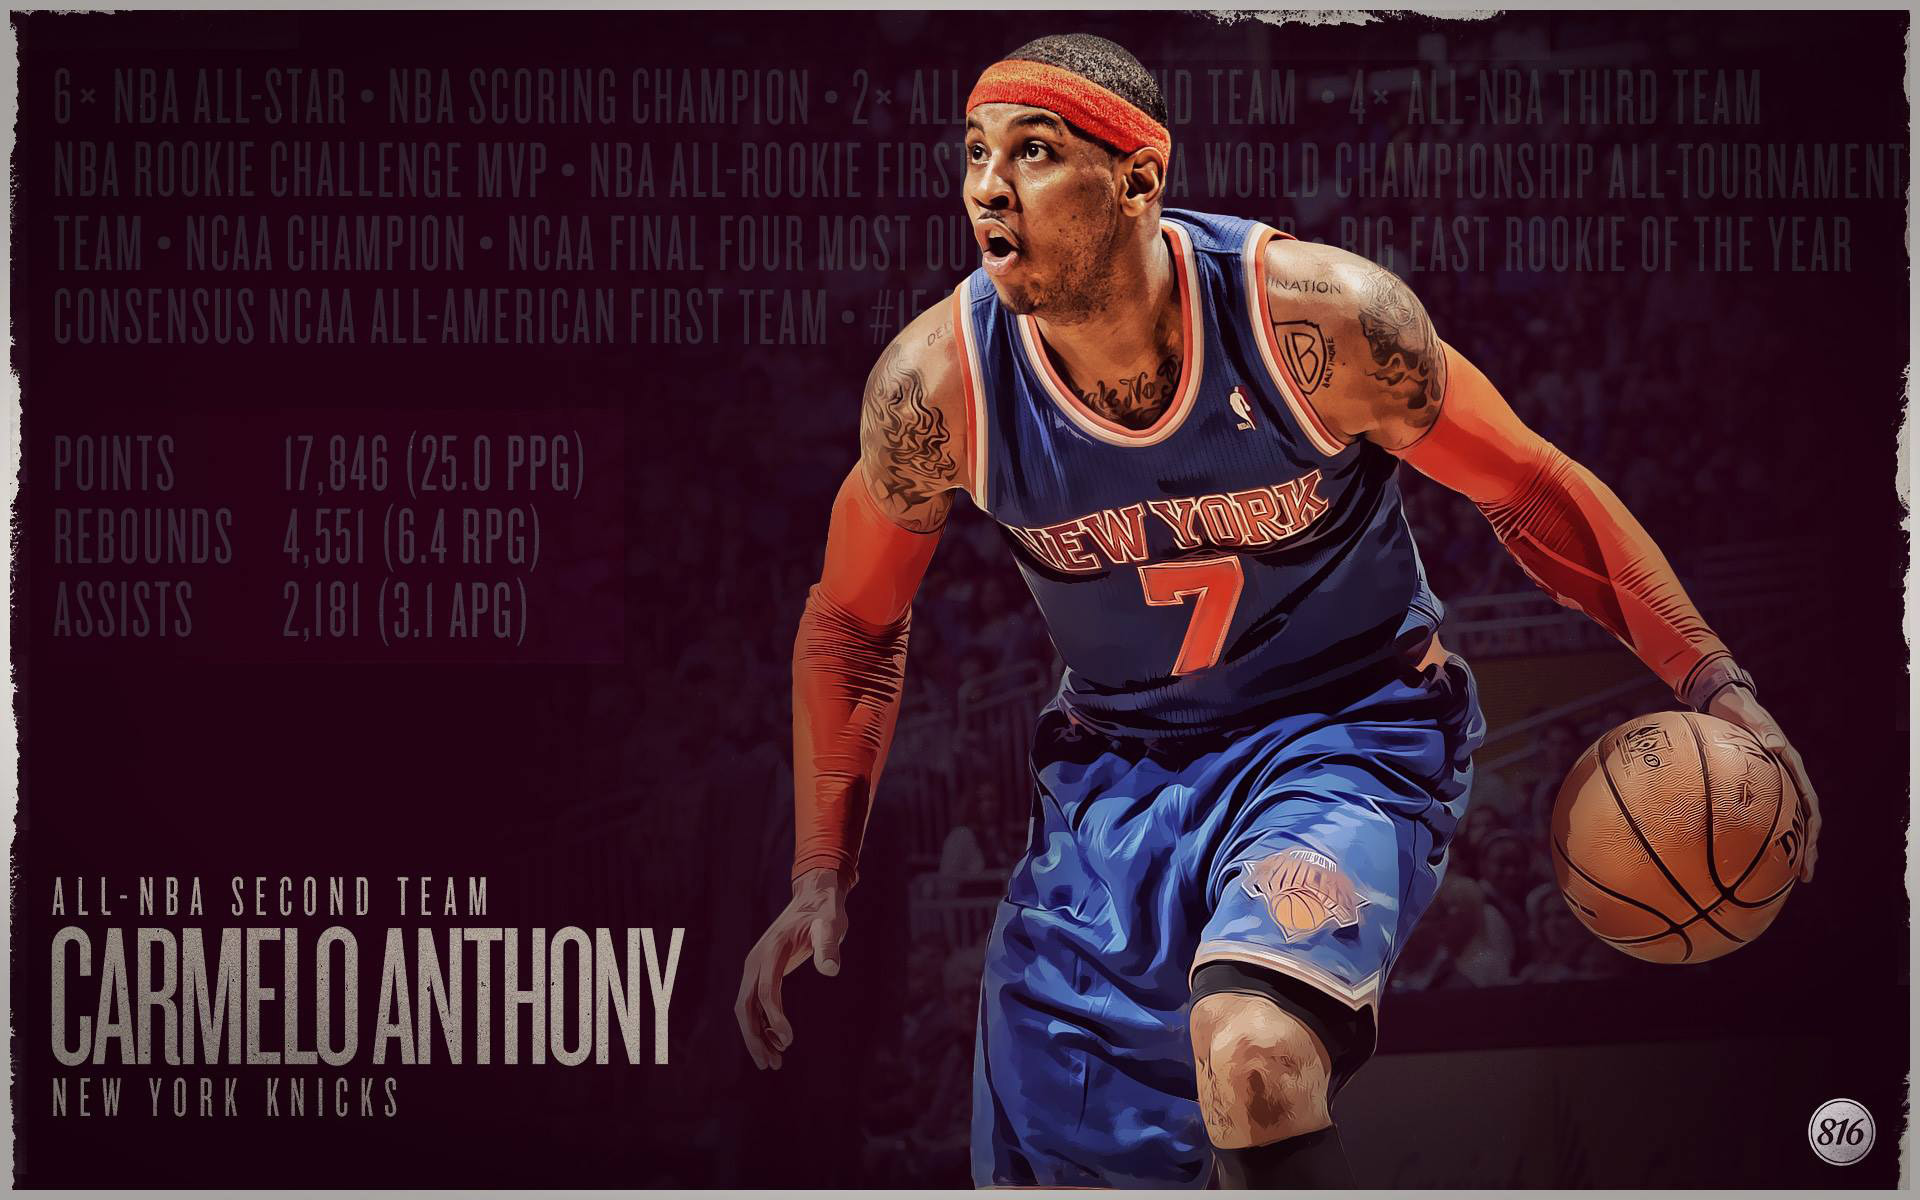 1920x1200 Carmelo Anthony 2013 All-NBA Second Team 1920Ã1200 Wallpaper